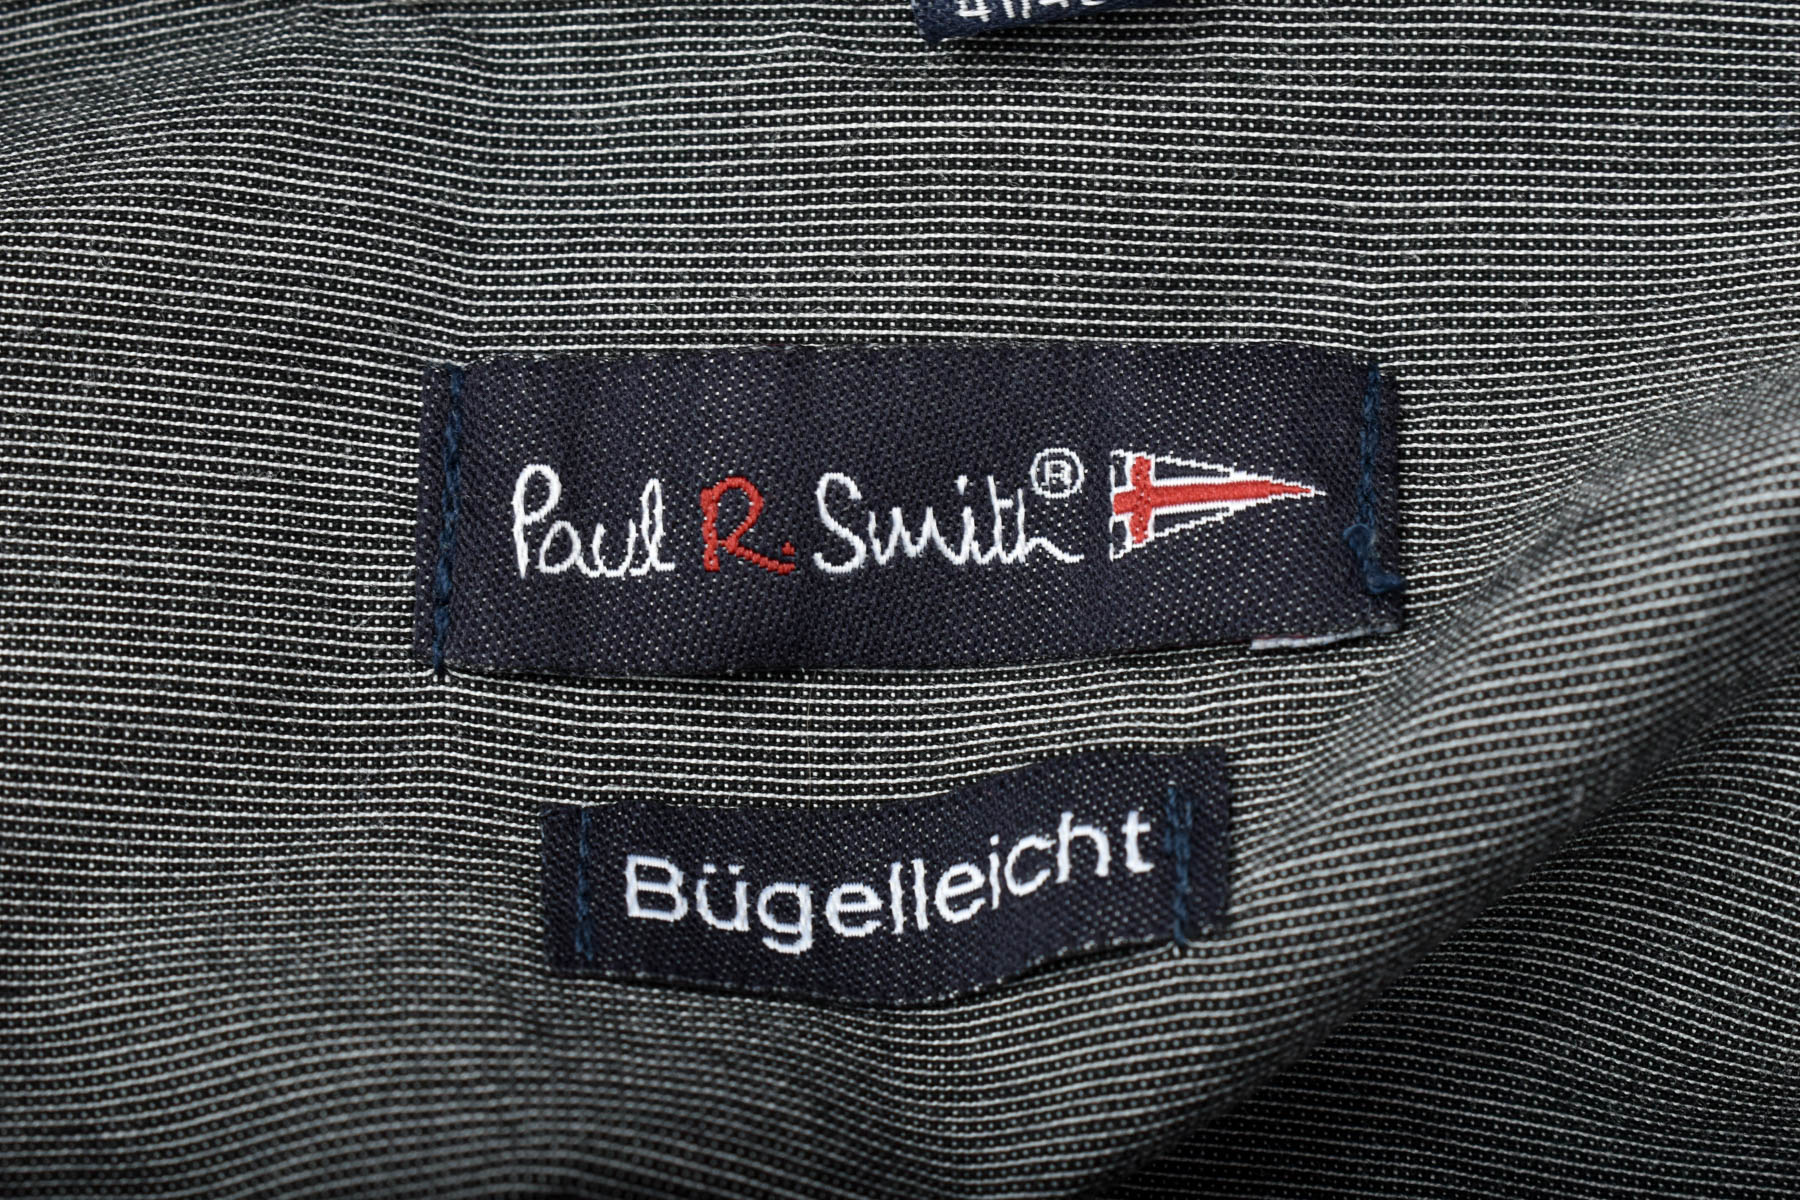 Ανδρικό πουκάμισο - Paul R. Smith - 2